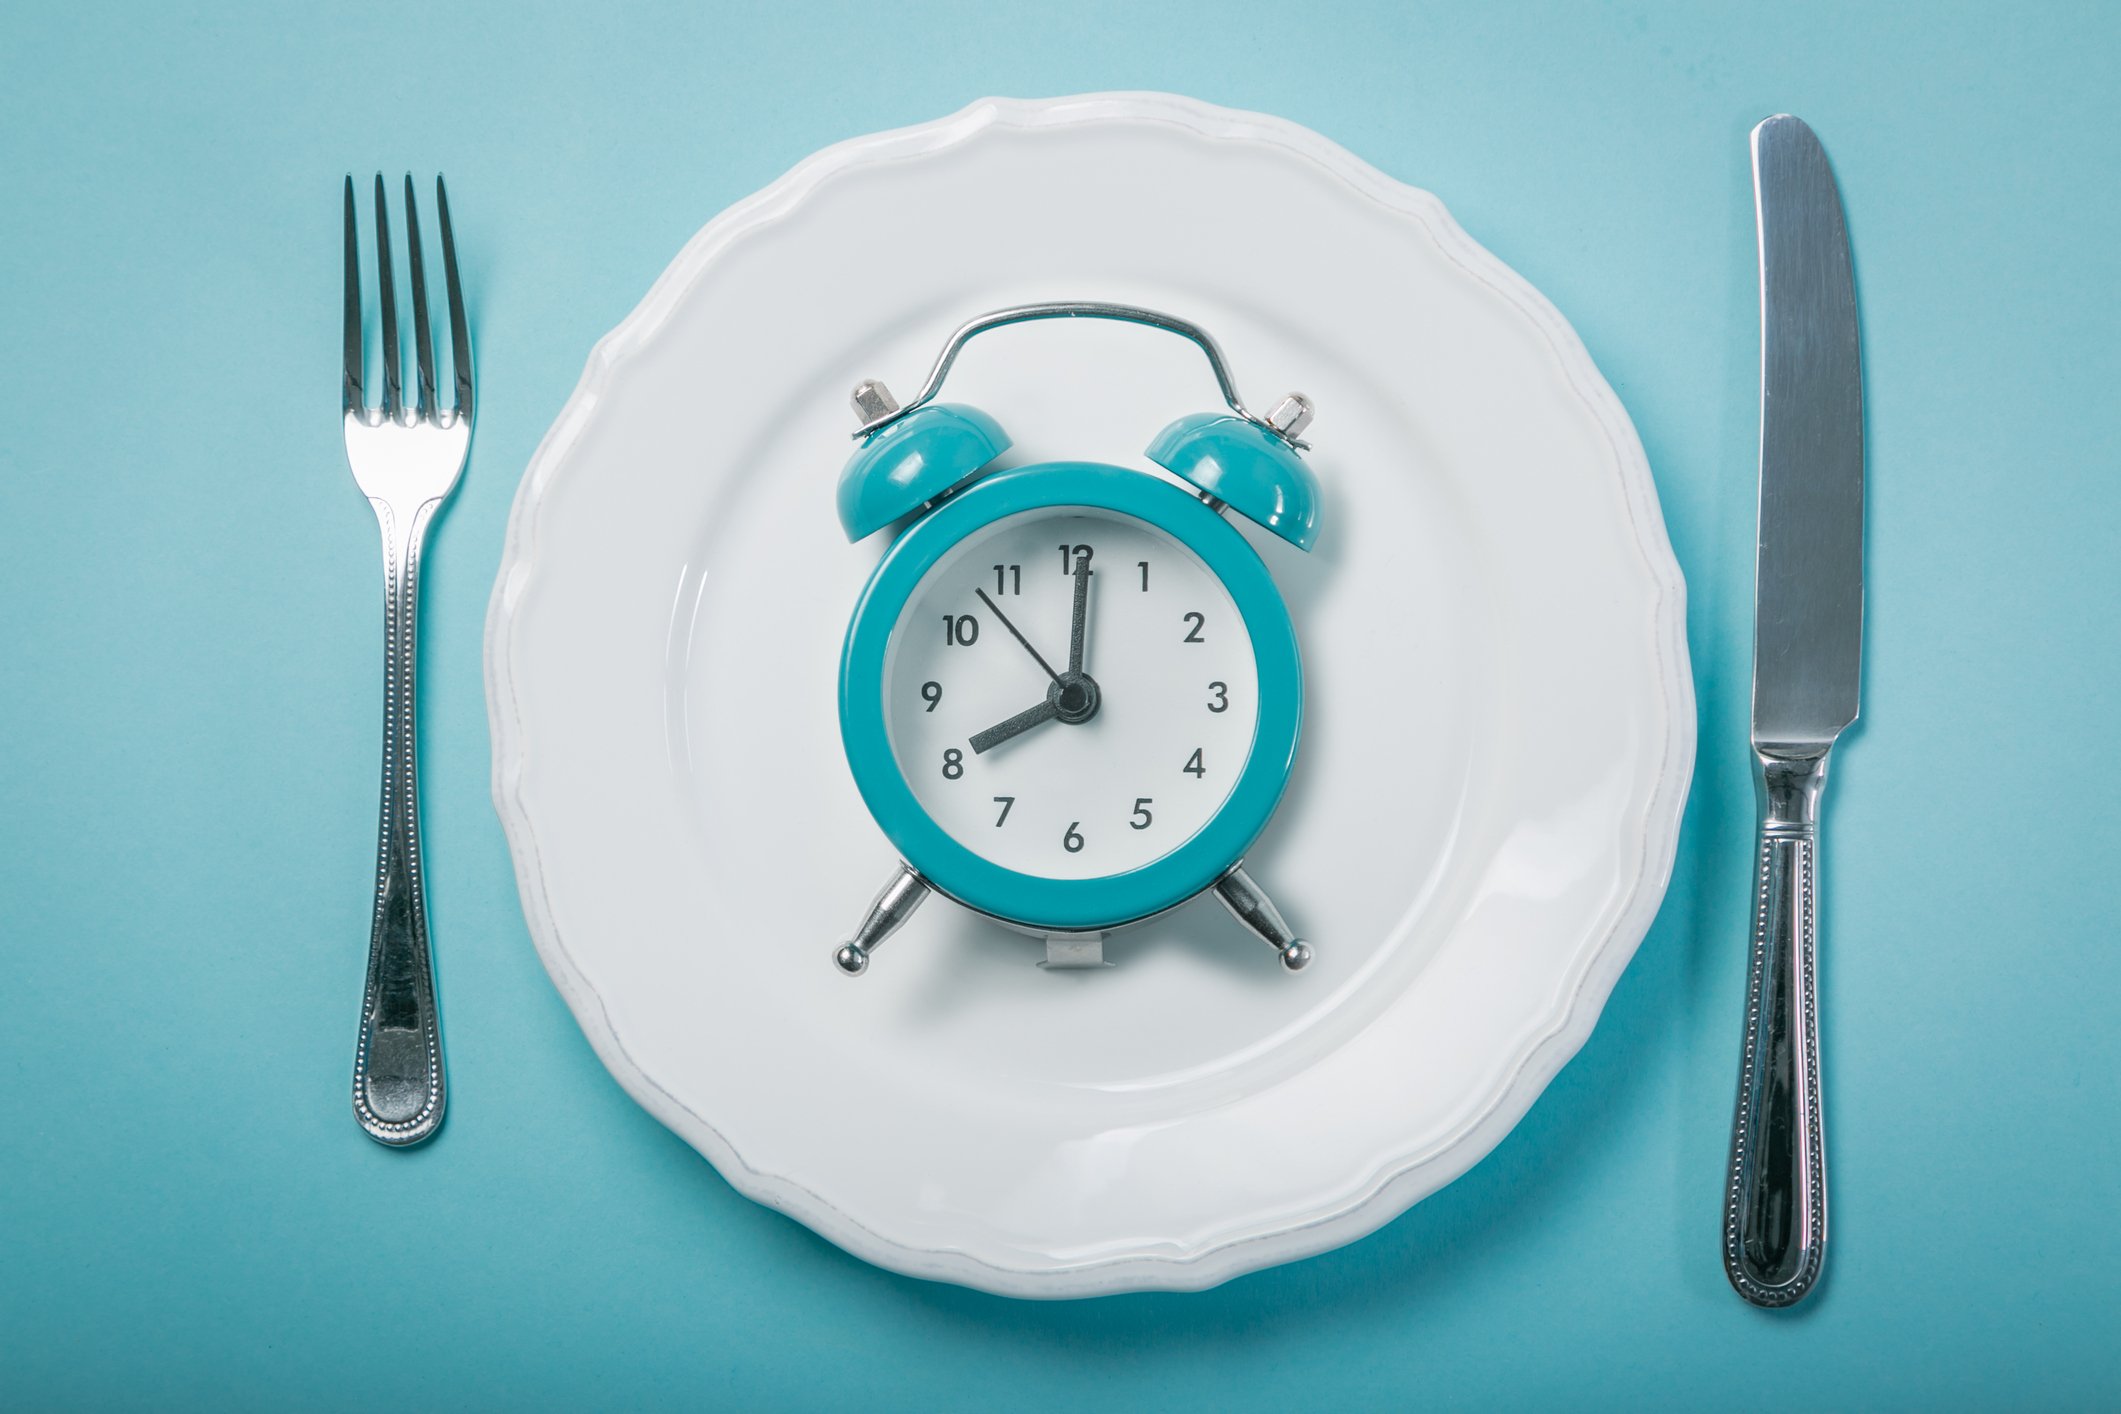 Διαλειμματική δίαιτα: Για πόσες ώρες μπορείτε να μείνετε νηστικοί;